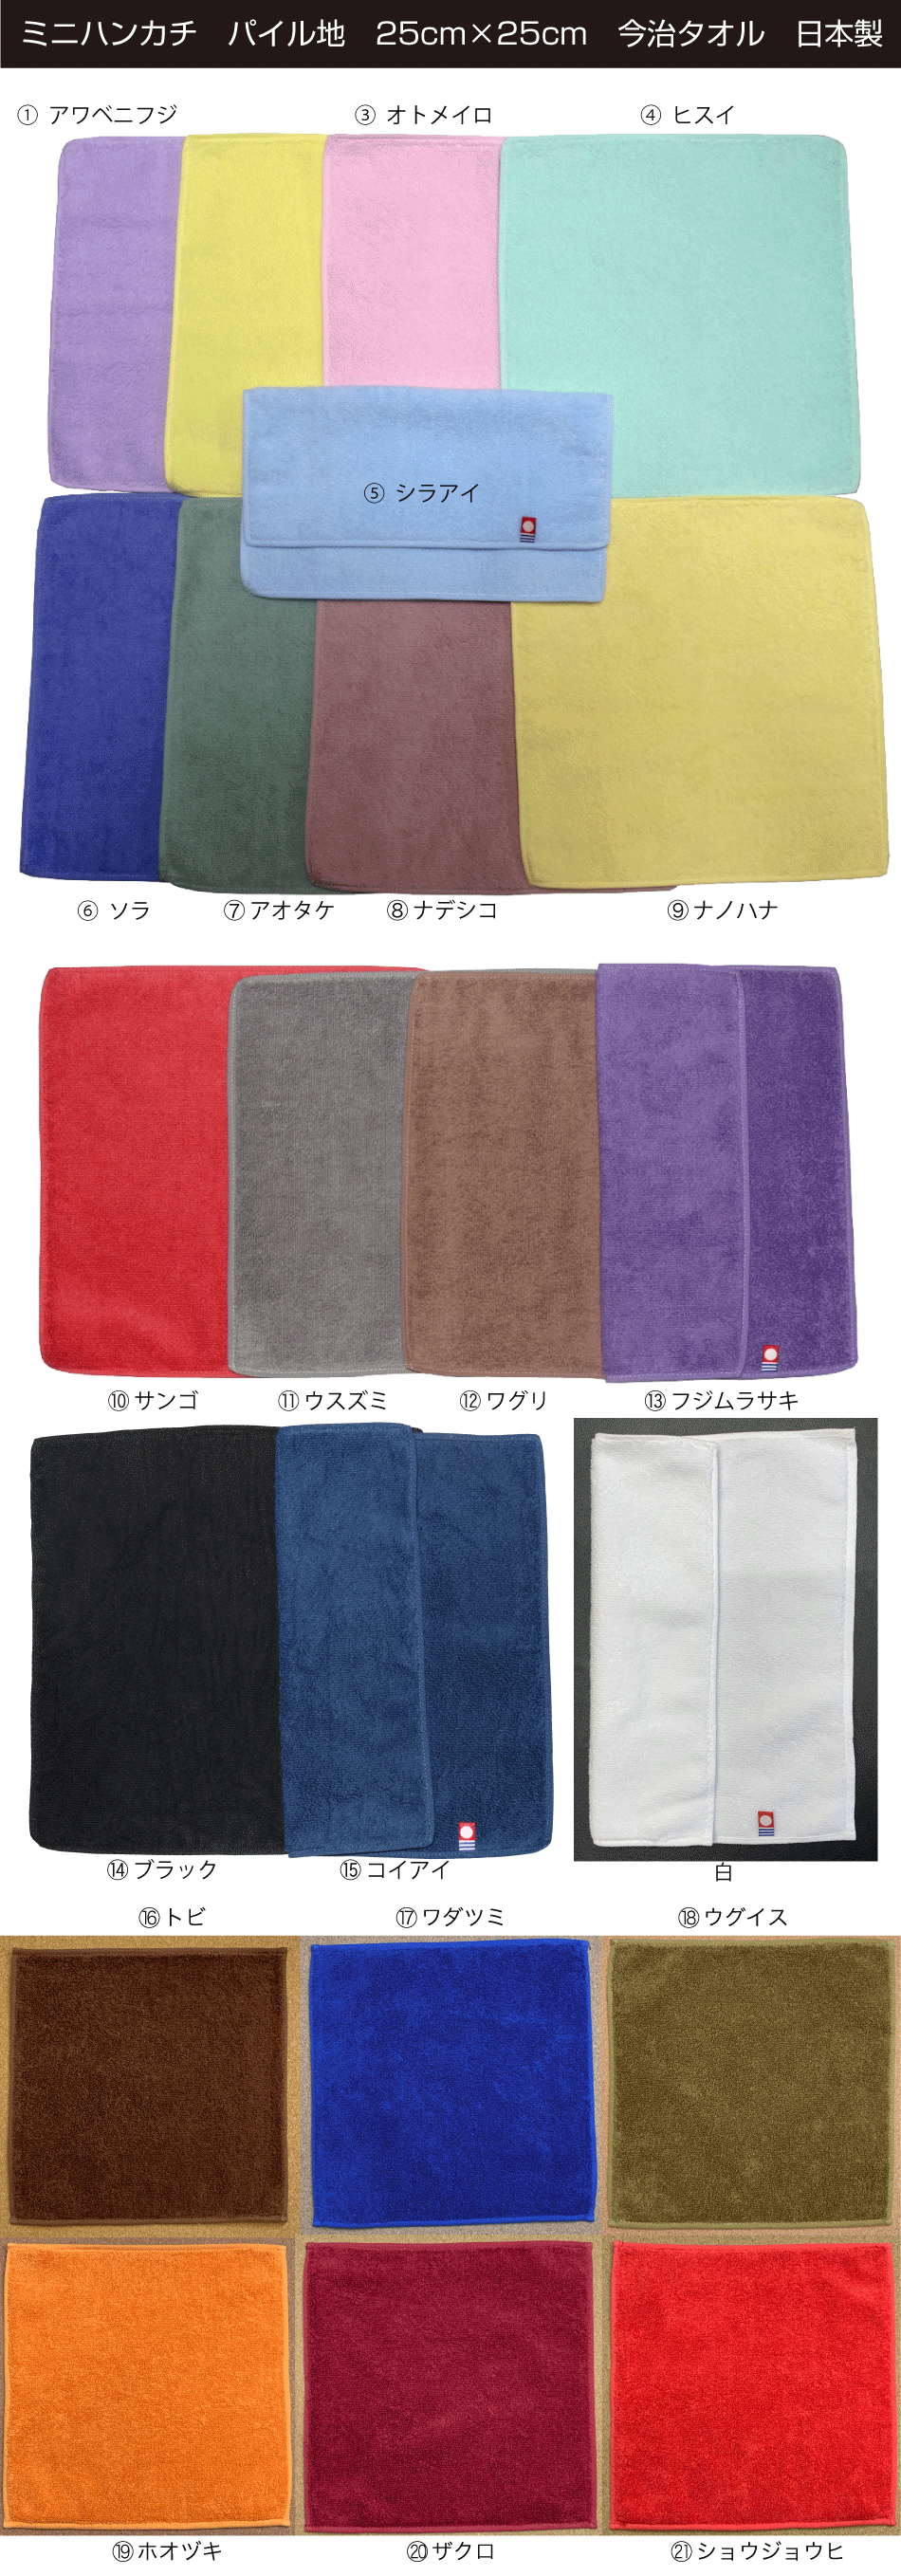 刺繍加工,ミニハンカチ,今治タオル,25cm×25cm,日本製,